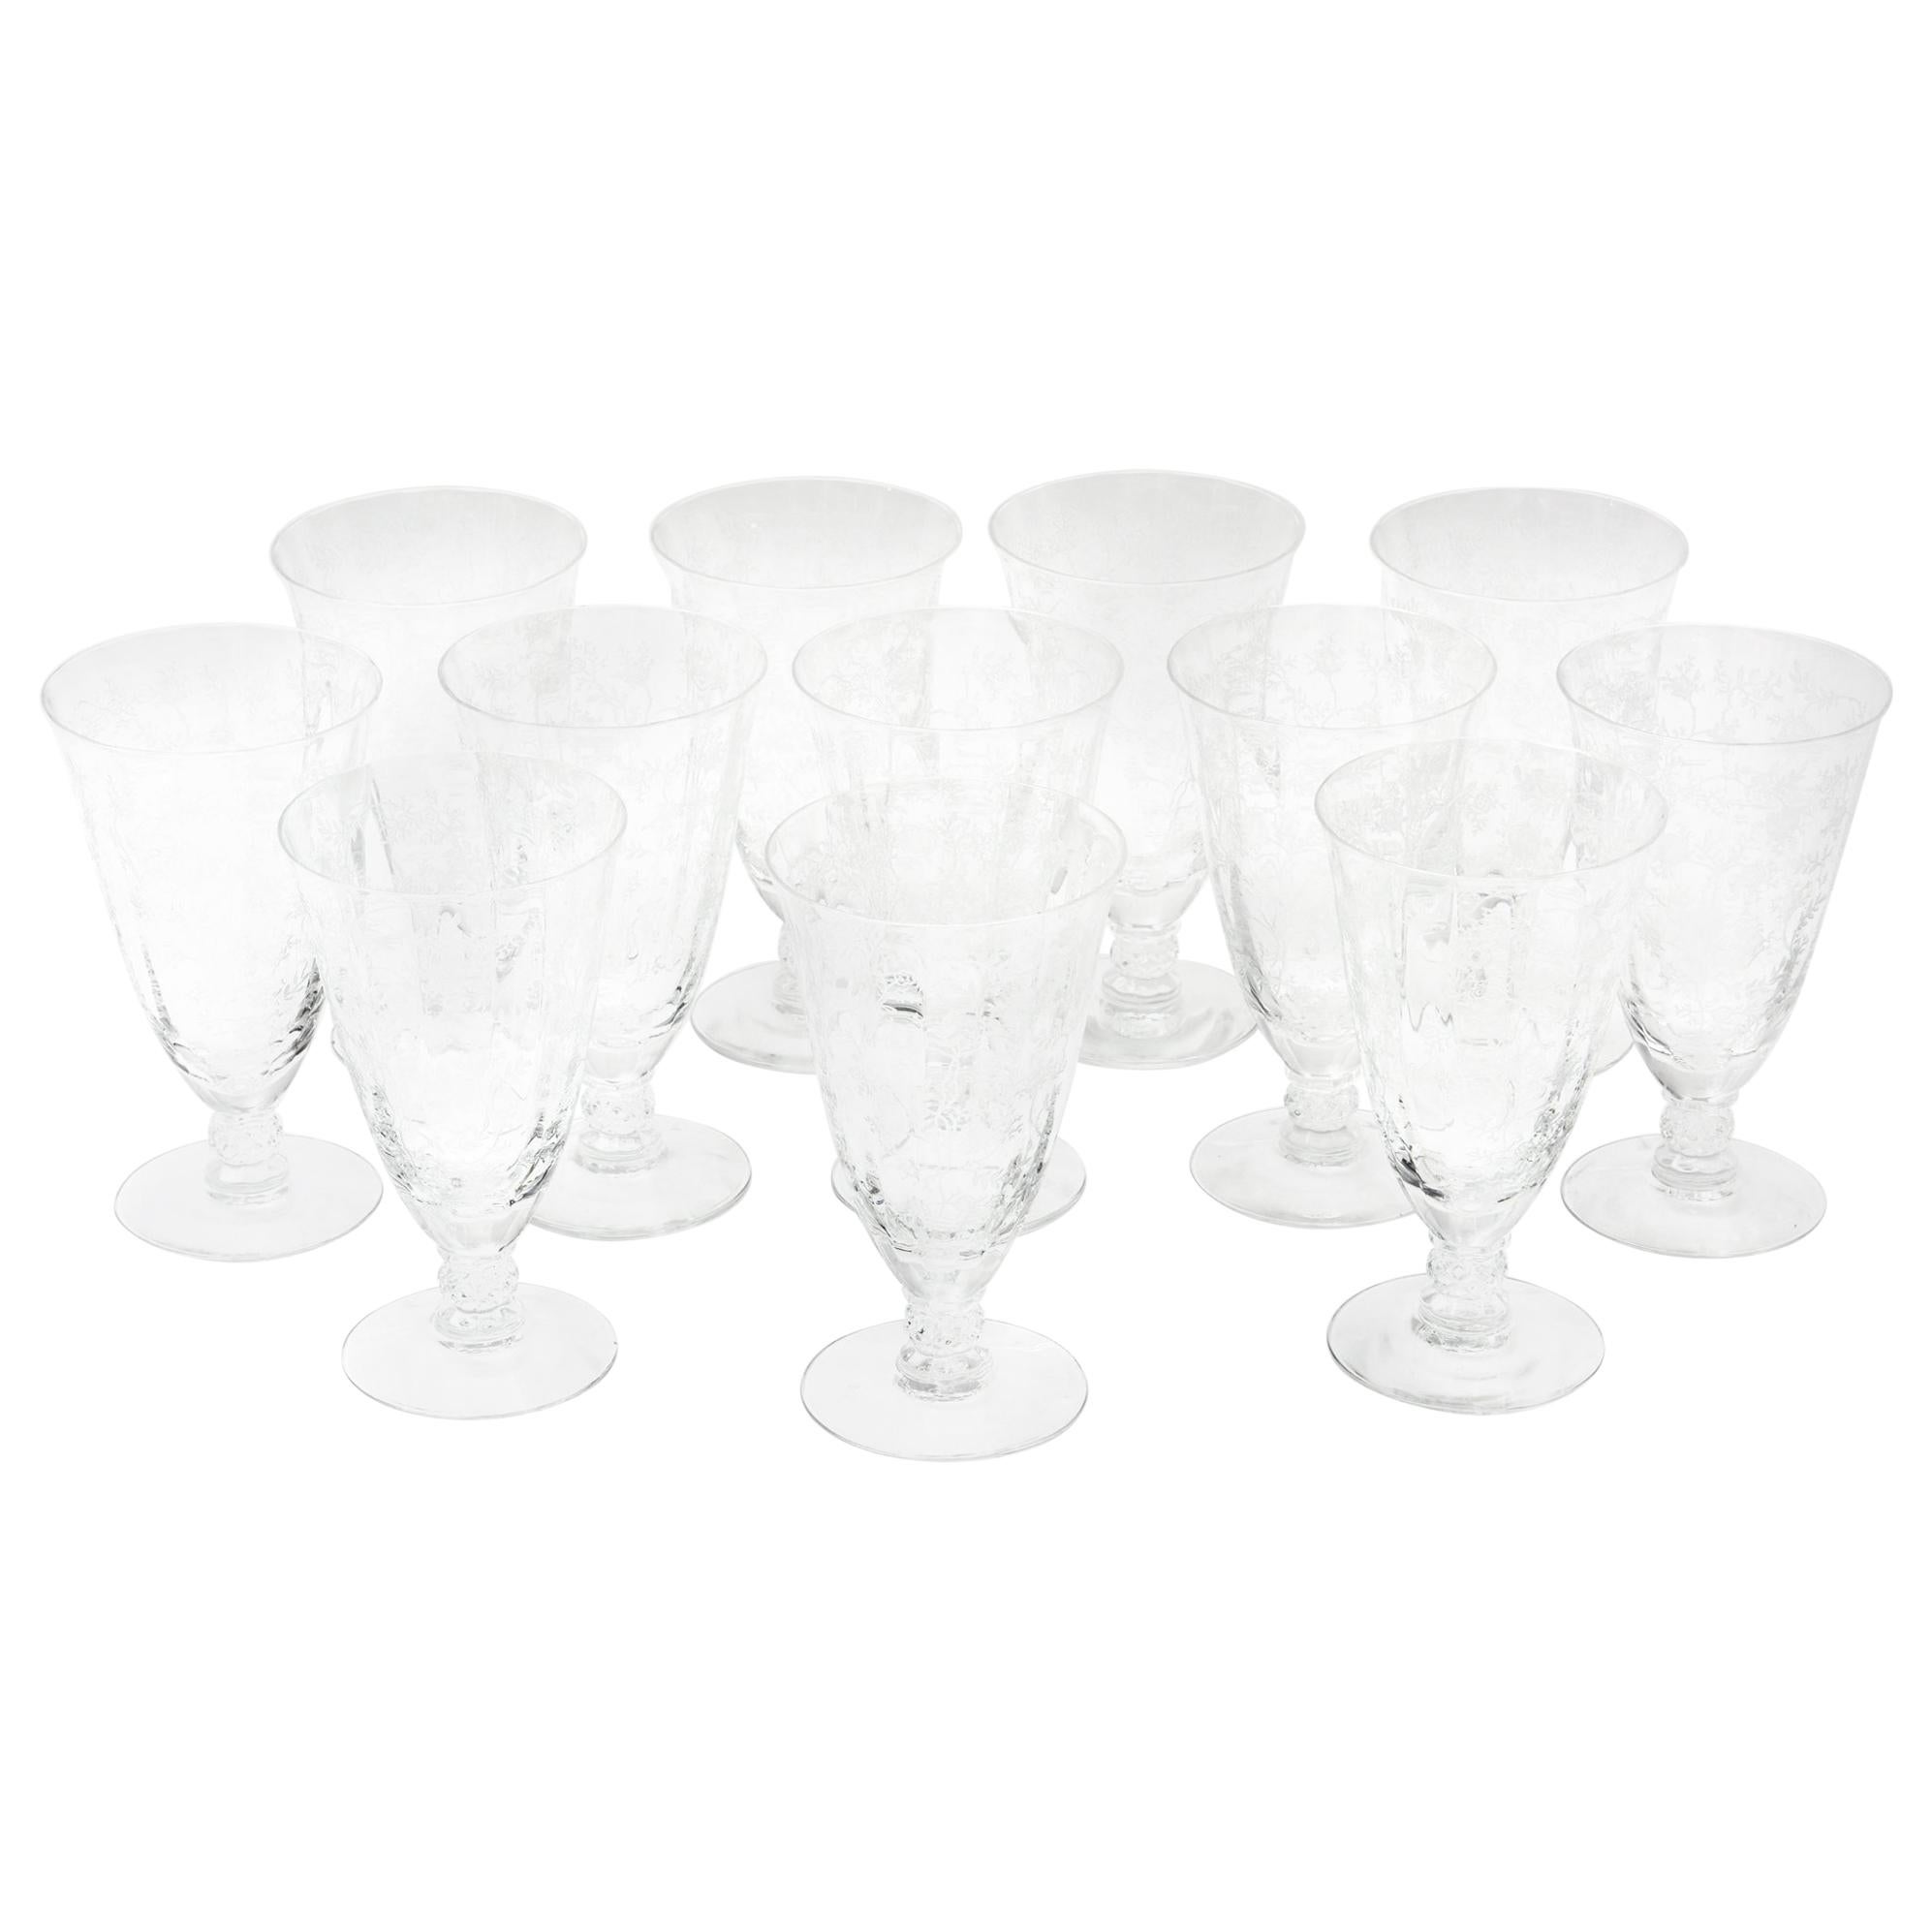 https://a.1stdibscdn.com/set-of-12-iced-tea-glasses-vintage-etched-design-for-sale/1121189/f_131257311558033083021/13125731_master.jpg